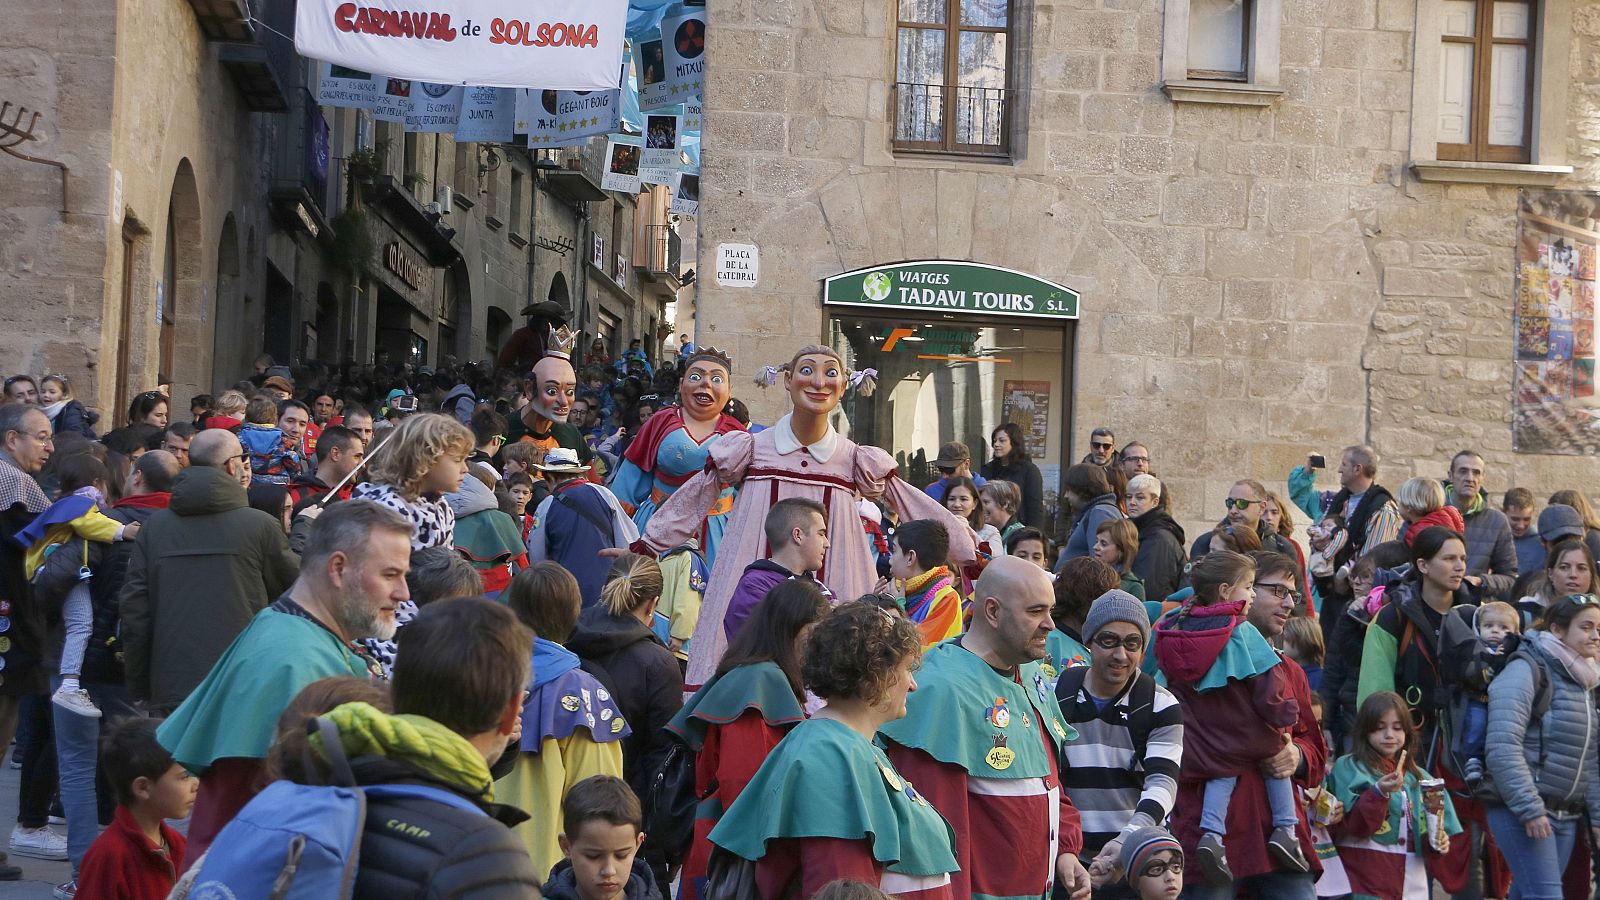 El carnaval de Solsona compta amb els gegants Bojos i amb la música del Bufi, que enguany celebra els seus 50 anys